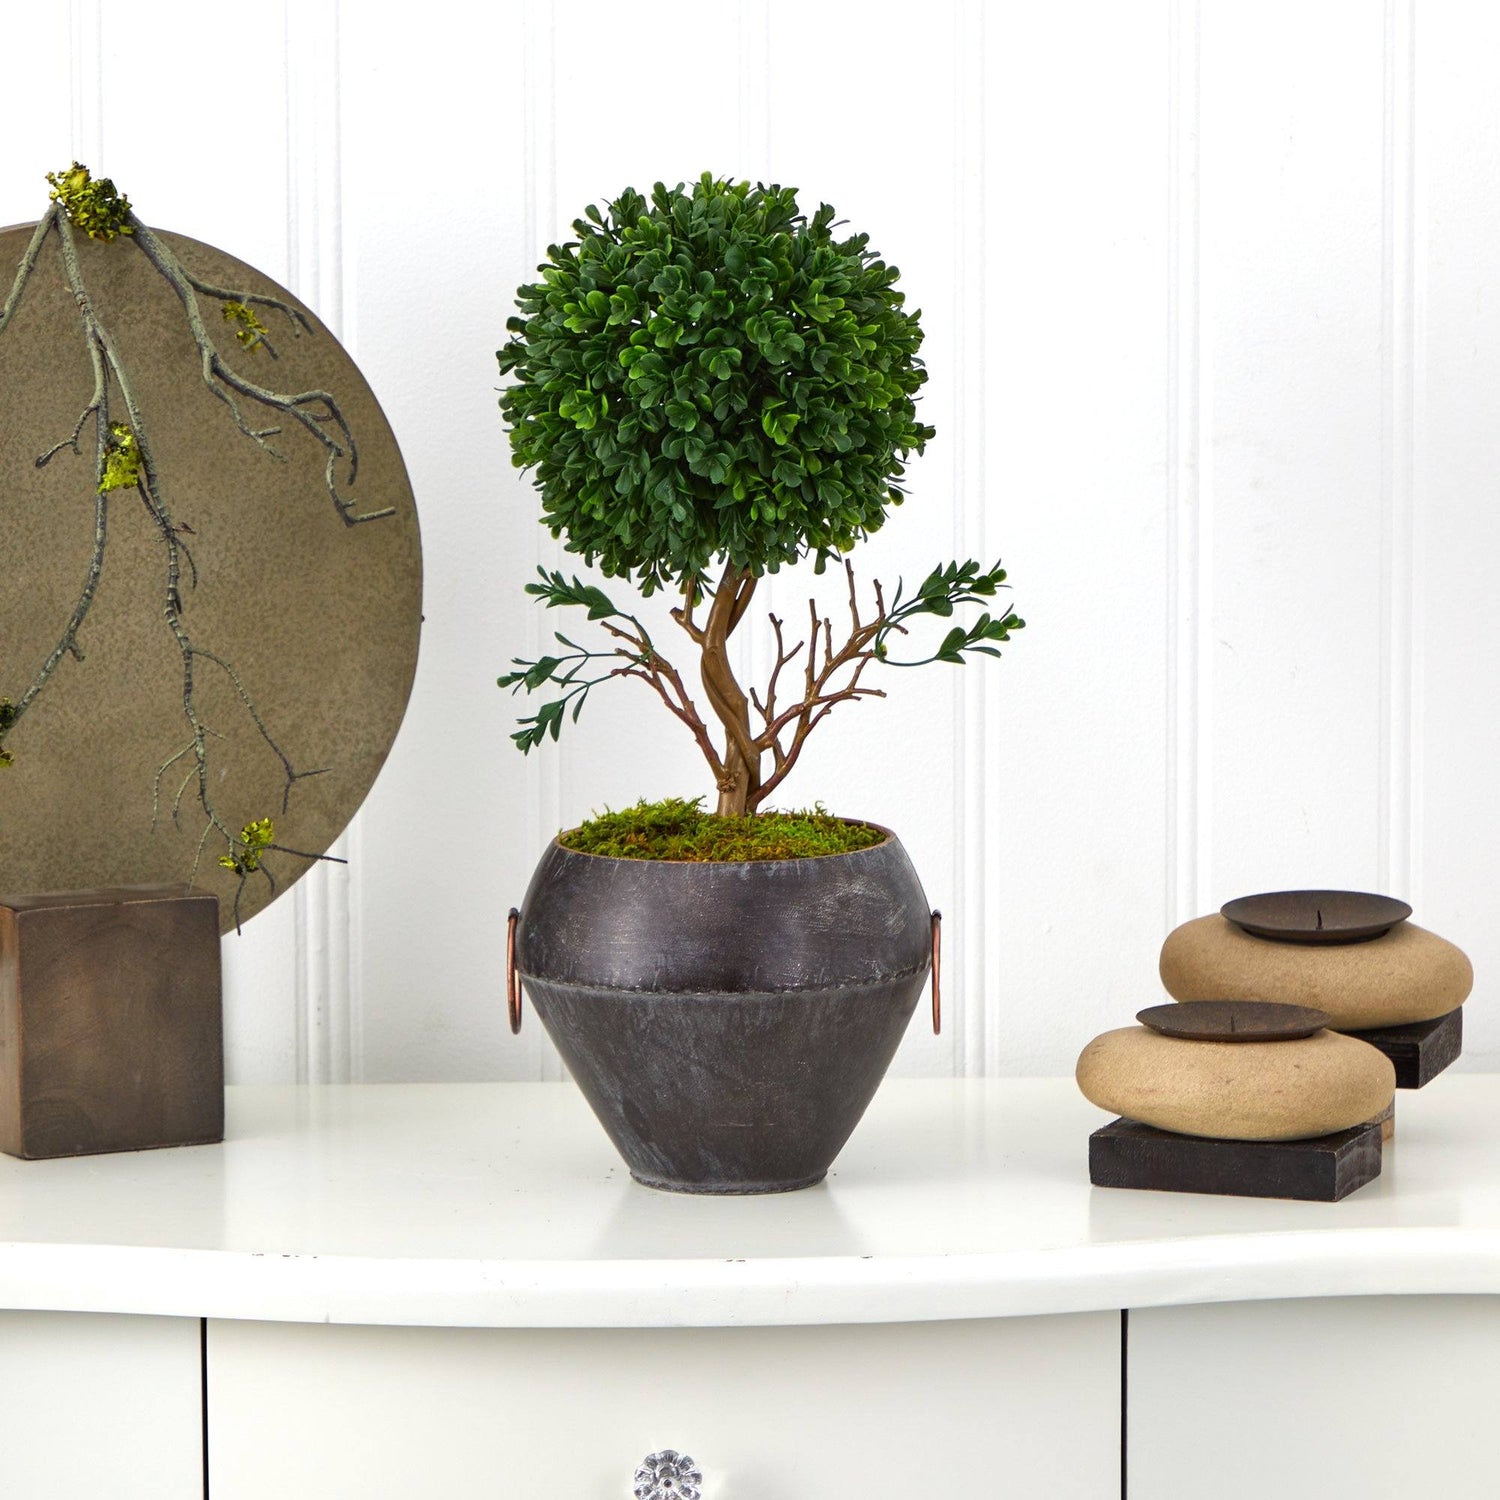 18” Boxwood Topiary Artificial Tree in Metal Bowl (Indoor/Outdoor)